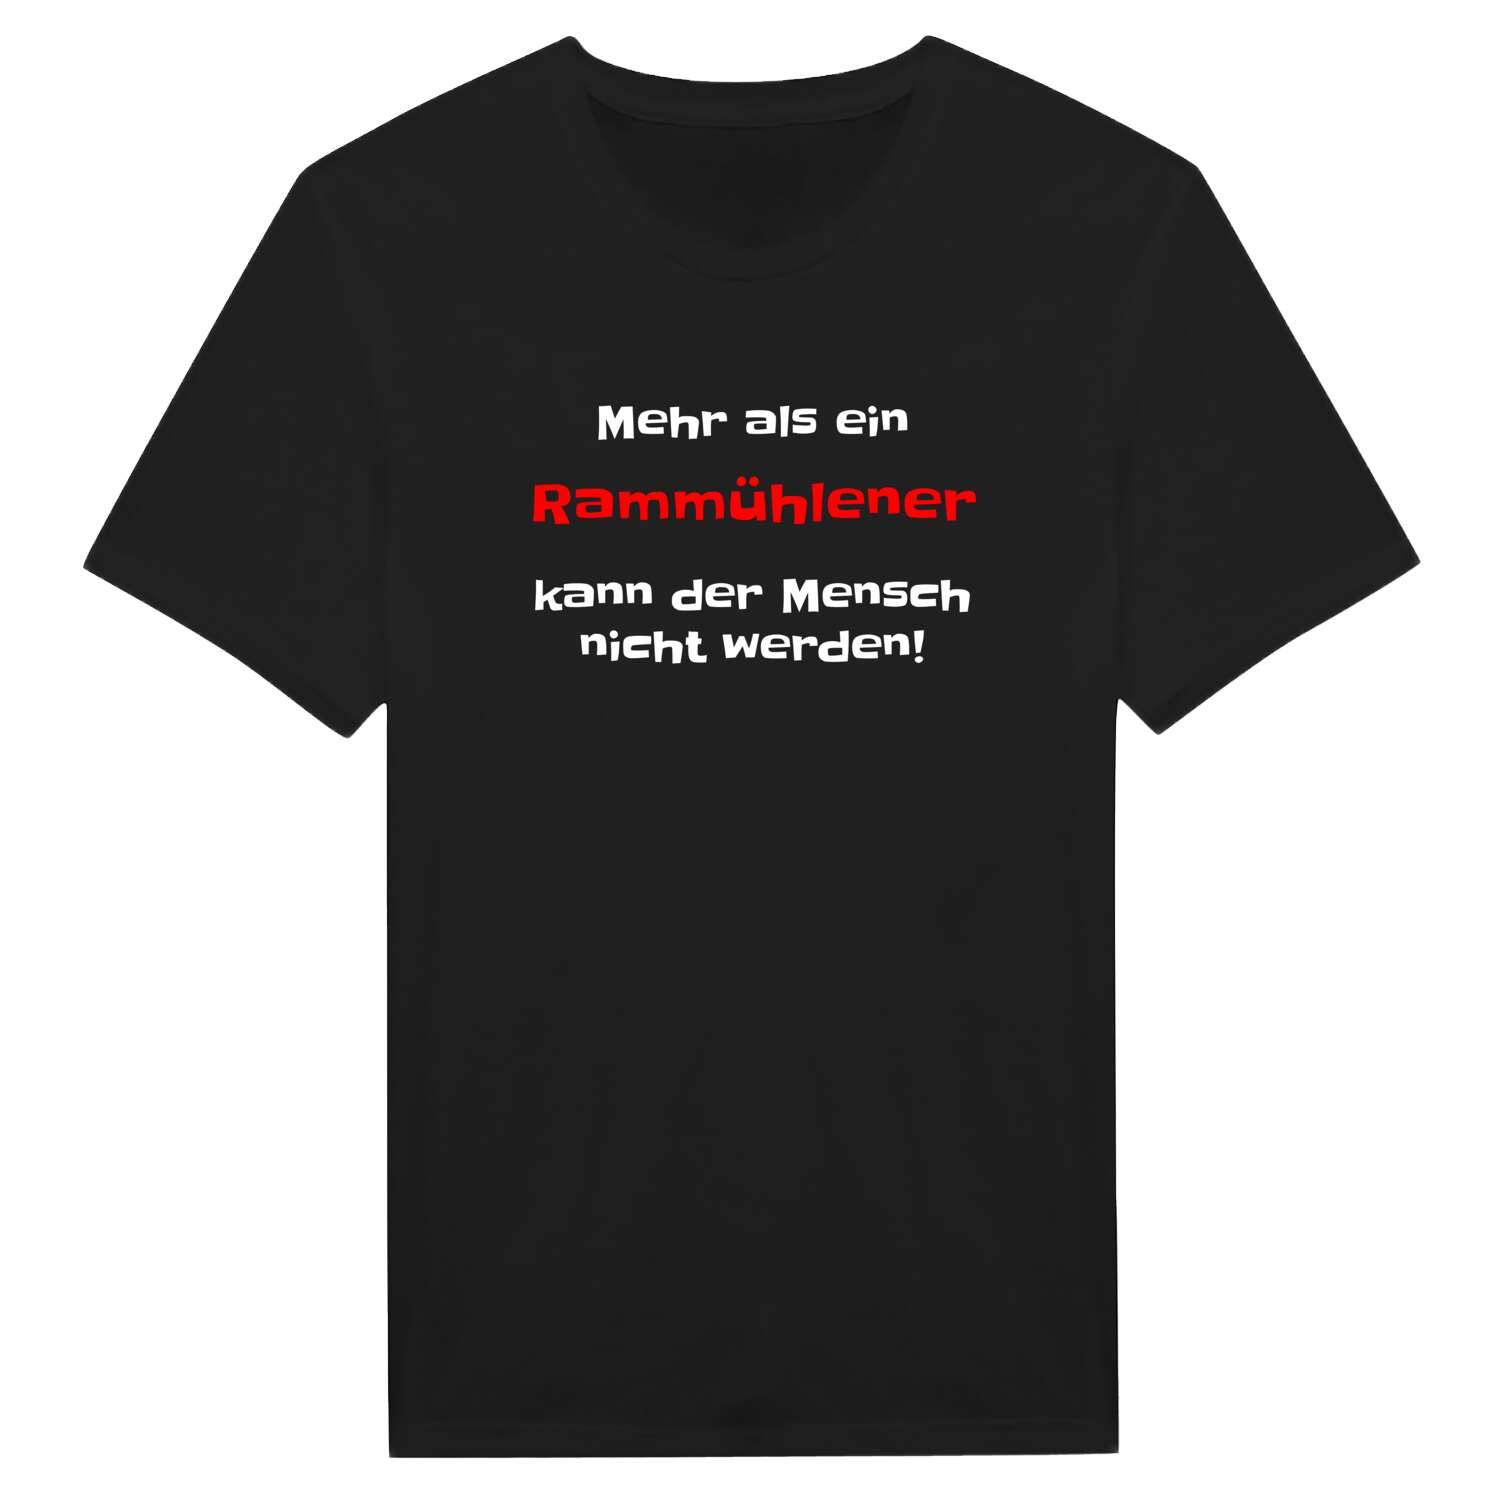 Rammühle T-Shirt »Mehr als ein«